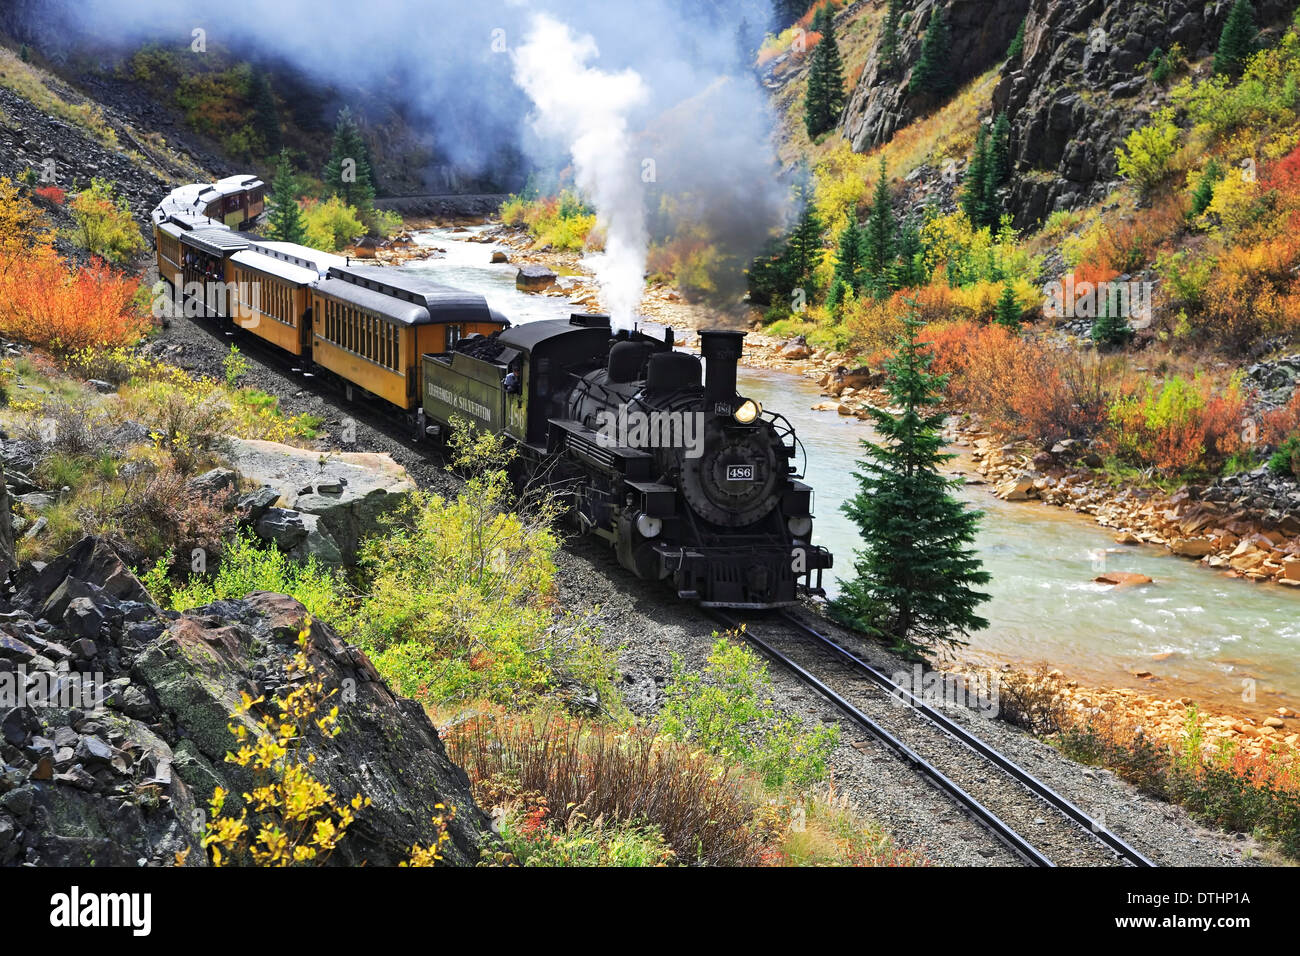 Durango & Silverton Narrow Gauge Railroad, Animas River and Fall colors, near Silverton, Colorado USA Stock Photo